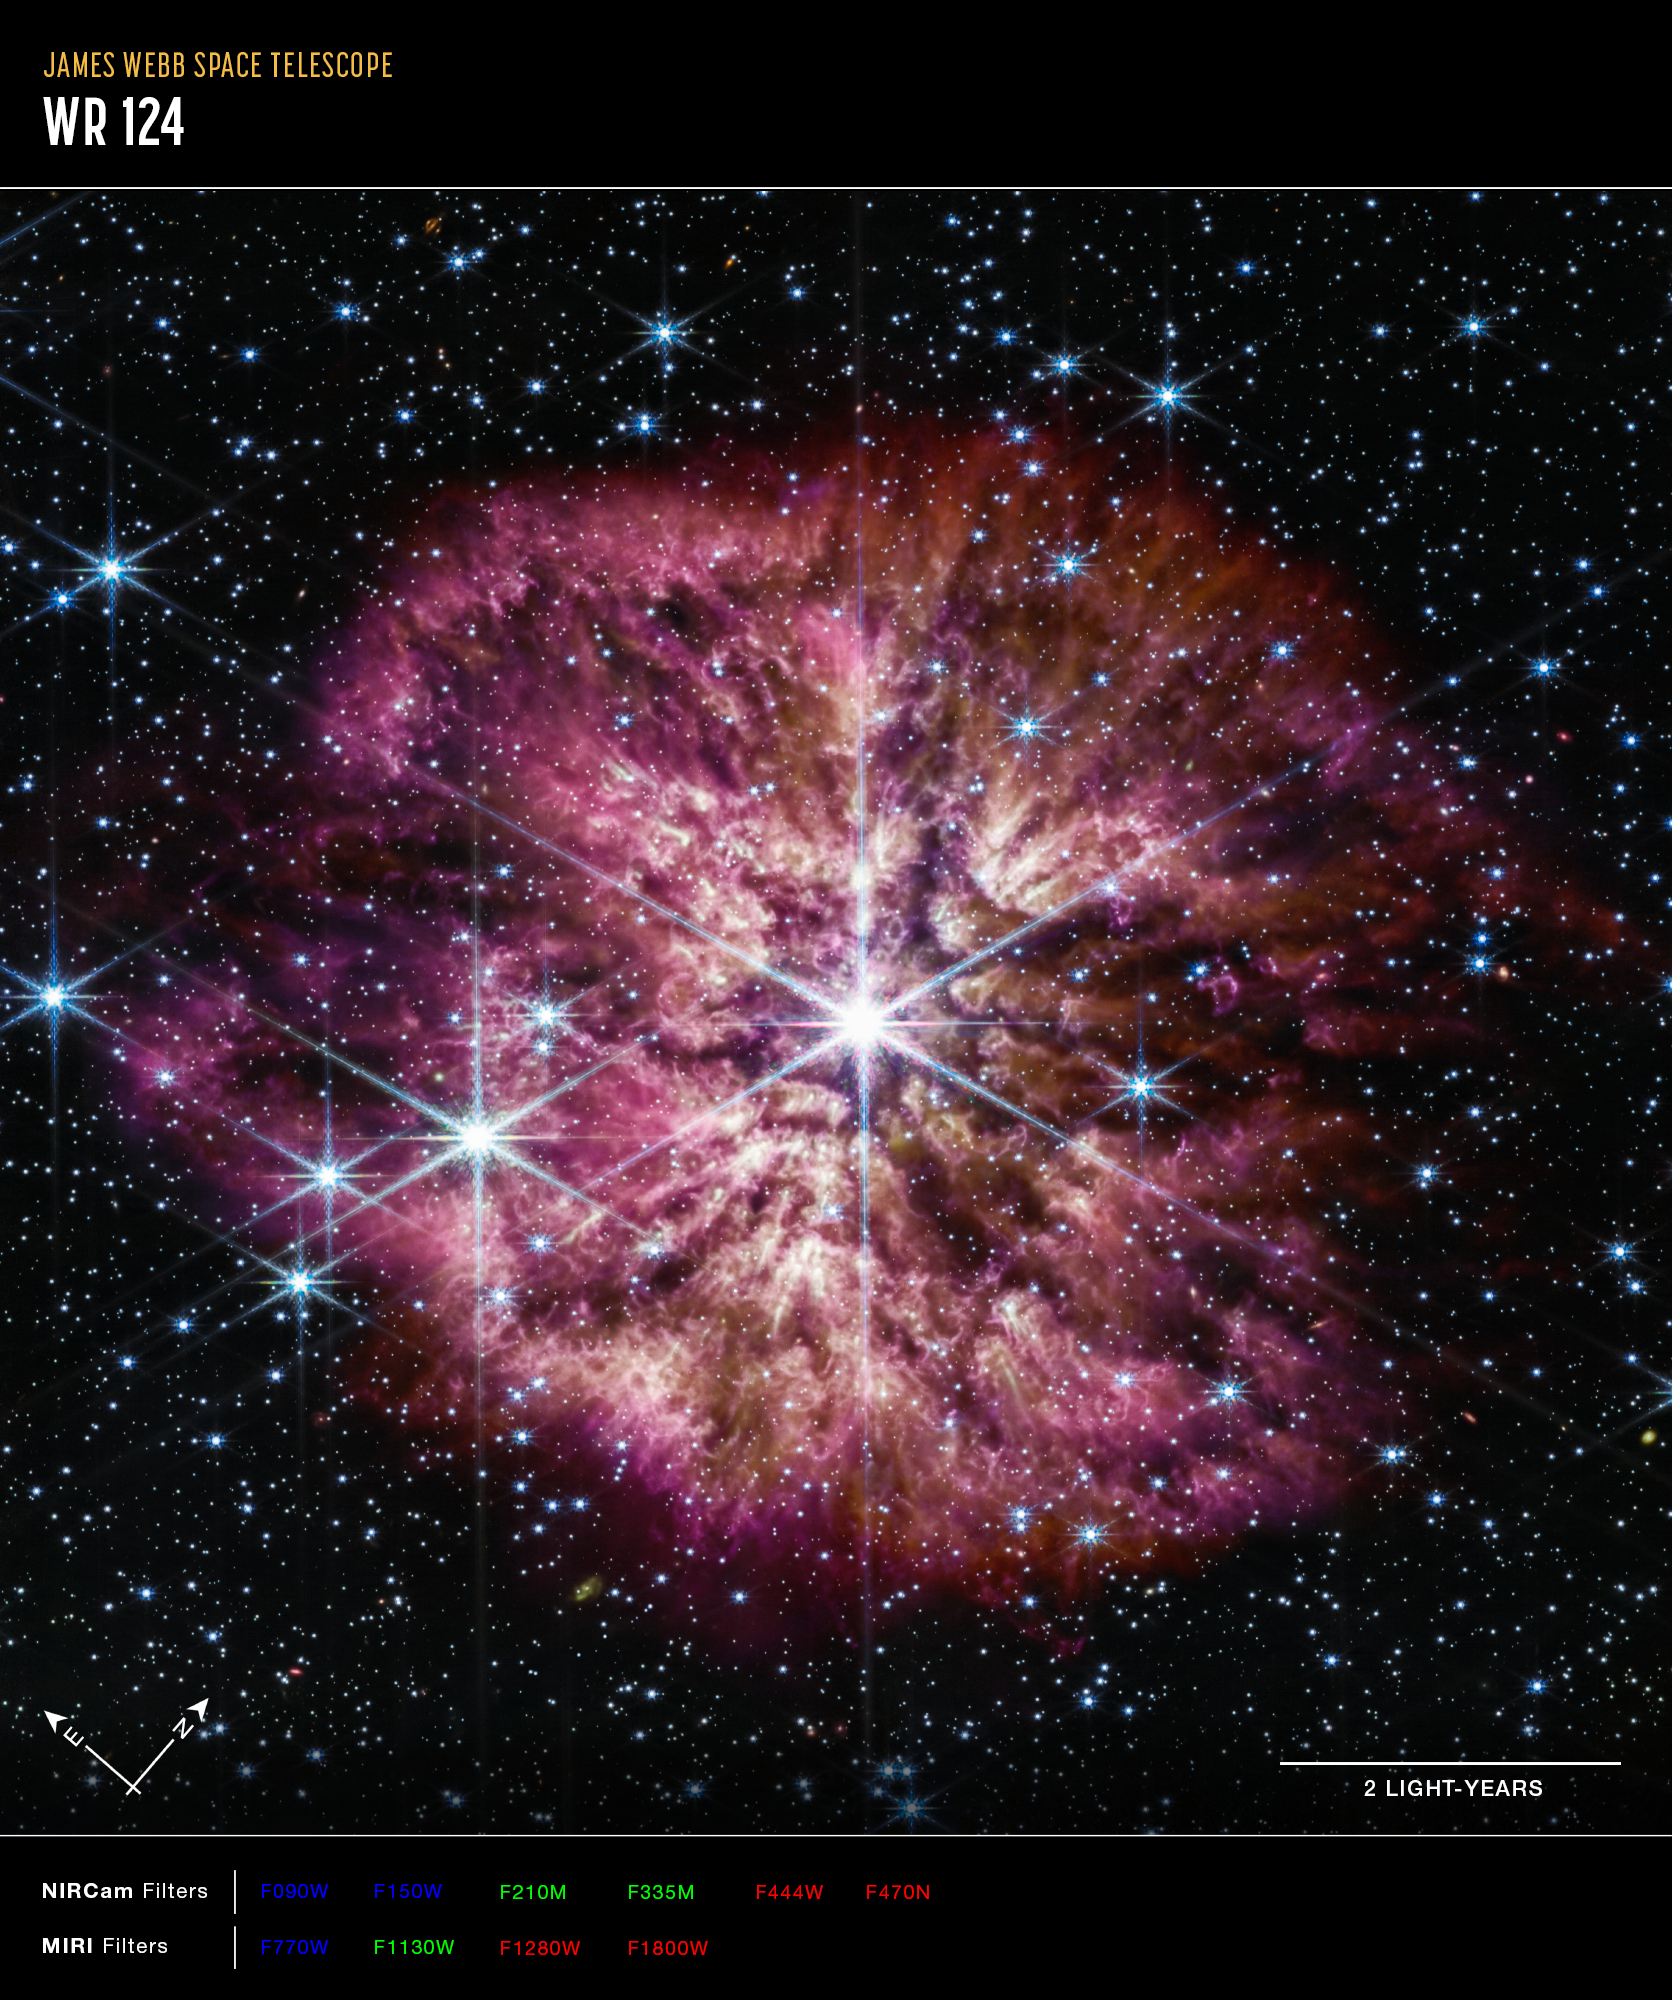 Na ilustracji: Jasna, gorąca gwiazda Wolf Rayet 124 (WR 124) jest widoczna w środku połączonego zdjęcia z Teleskopu Webba obejmującego zakres bliskiej (kamera NIRCam) i średniej (MIRI) podczerwieni. Gwiazda centralna prezentuje charakterystyczne promienie dyfrakcyjne („spajki”) na zdjęciu uzyskanym przez kamerę NIRCam, które są efektem instrumentalnym spowodowanym konstrukcją Teleskopu Webba. Na zdjęciu z NIRCam jasność gwiazdy WR124 jest zrównoważona ze słabiej świecącym gazem i pyłem ją otaczającym. Natomiast instrument MIRI ujawnia strukturę samej mgławicy.  Na zdjęciu w barwie czerwonej pokazano obserwacje dla filtrów o średnich długościach fali 4,44 / 4,7 / 12,8 / 18 μm, w barwie zielonej – 2,1 / 3,35 / 11,3 μm, w barwie niebieskiej – 0,9 / 1,5 / 7,7 μm. Źródło: NASA, ESA, CSA, STScI, Webb ERO Production Team